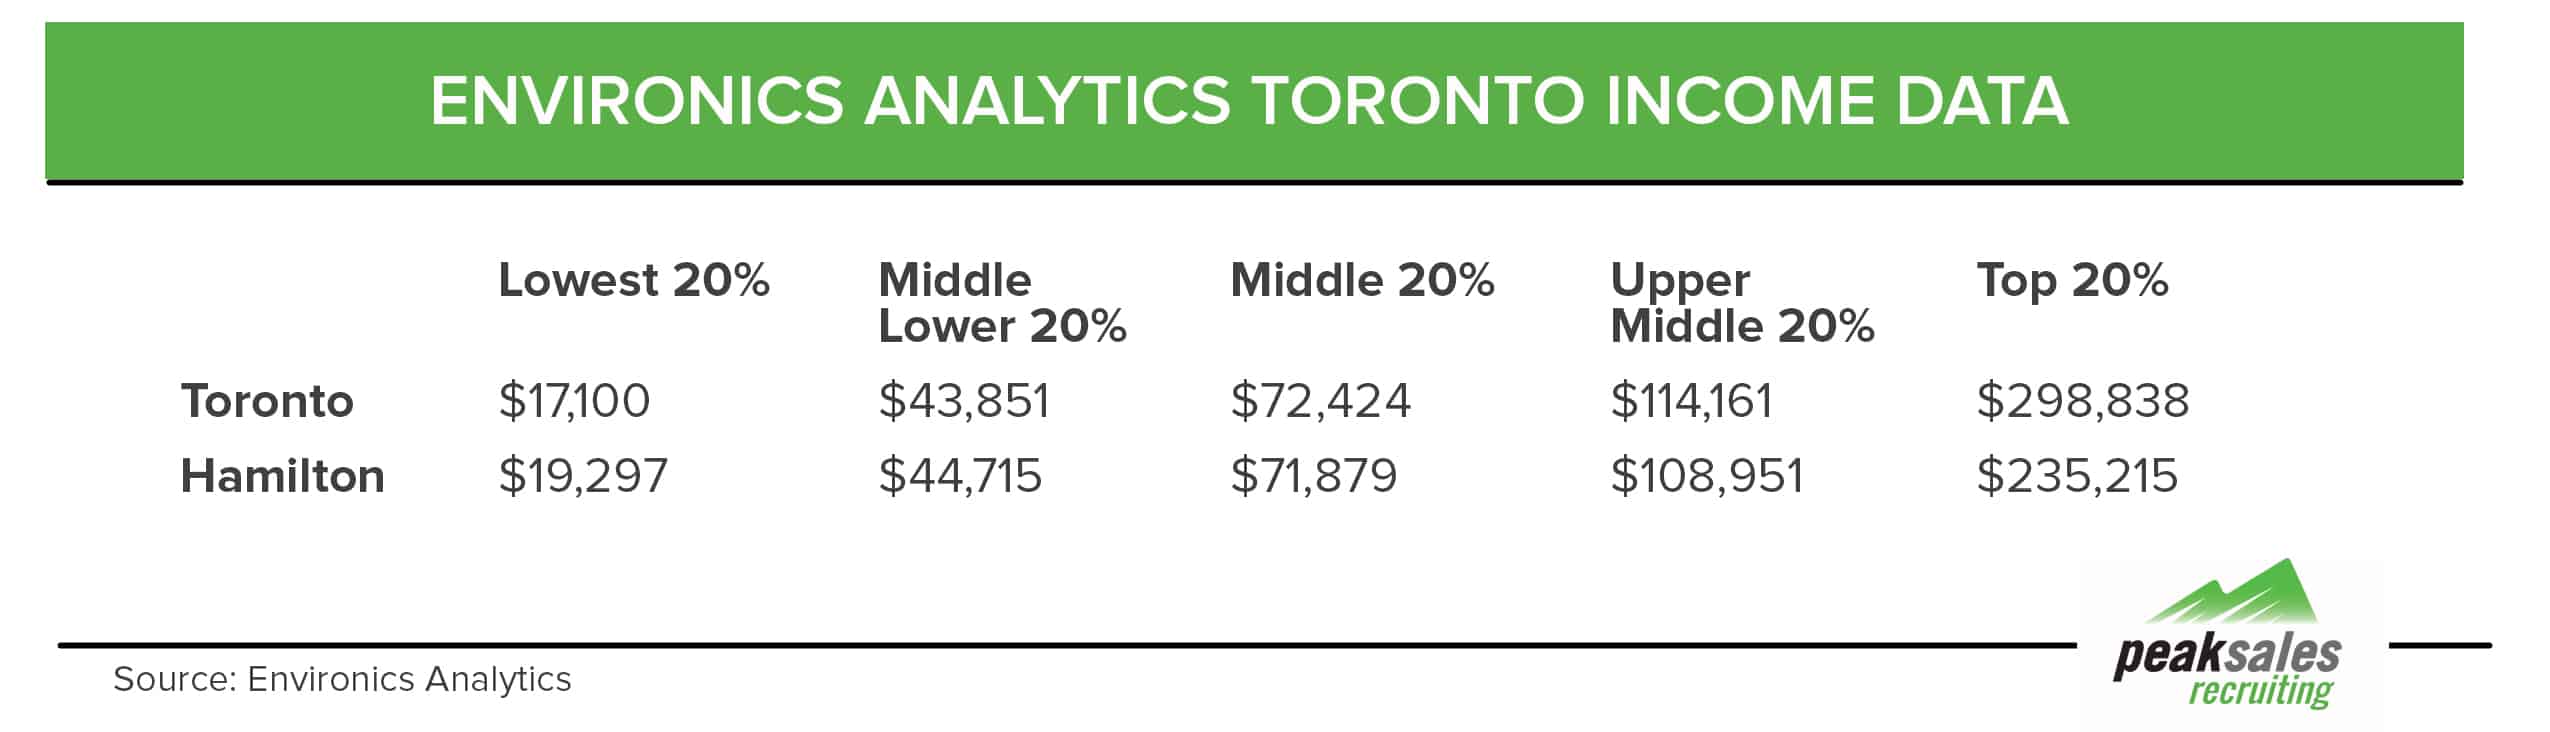 Environics Analytics Data 2016 Toronto